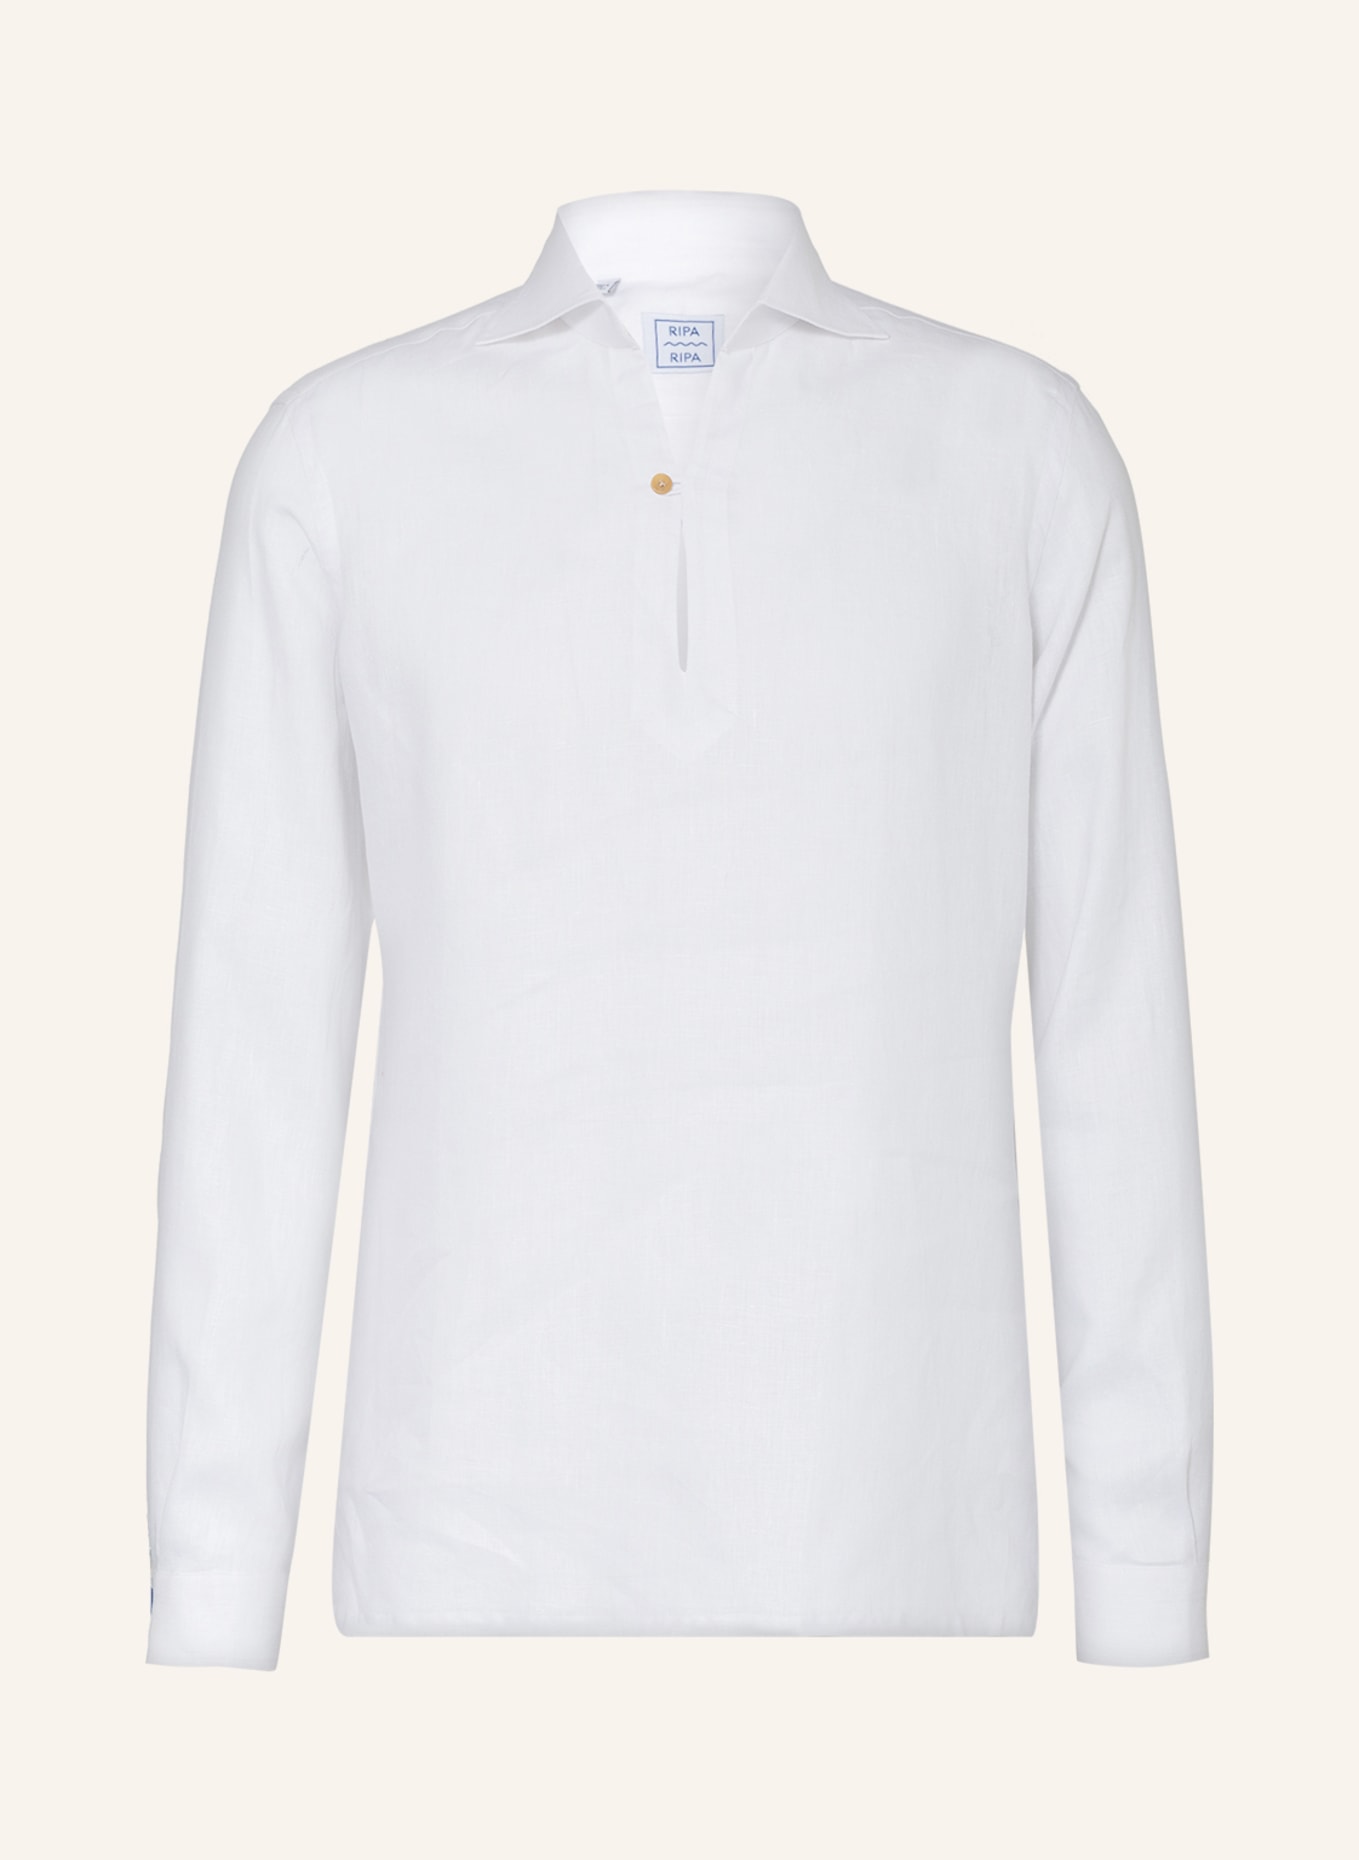 RIPA RIPA Linen shirt regular fit, Color: WHITE (Image 1)